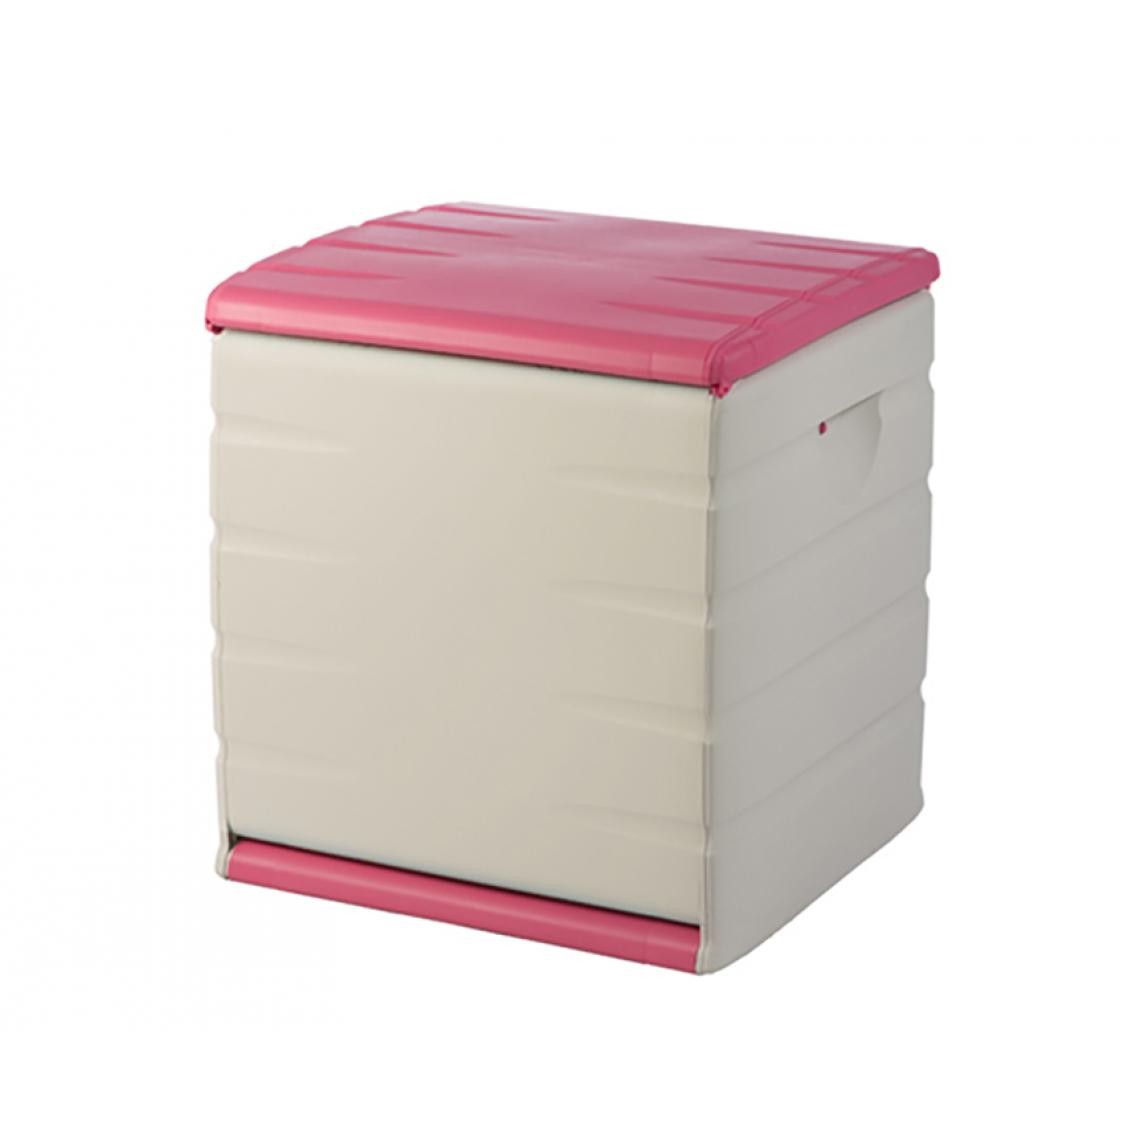 Pegane - Coffre de rangement intérieur/extérieur coloris rose - Longueur 60 x Profondeur 61 x Hauteur 53 cm - Malles, coffres